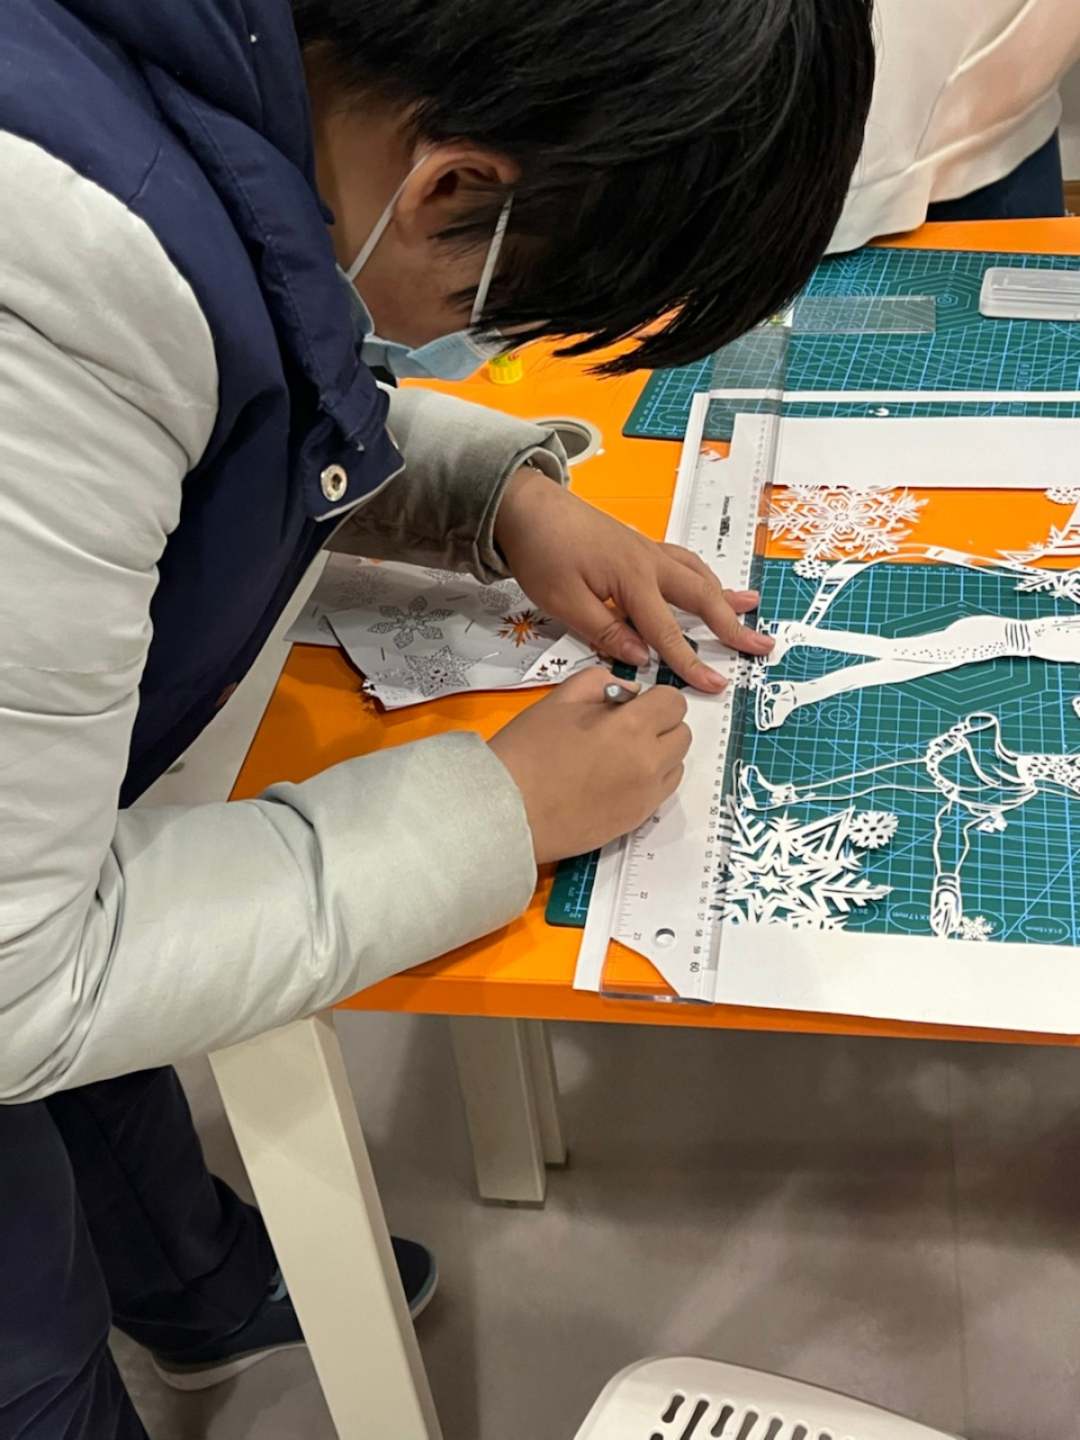 中国艺术剪纸协会会长卢雪与中学生共剪“未来”迎冬奥